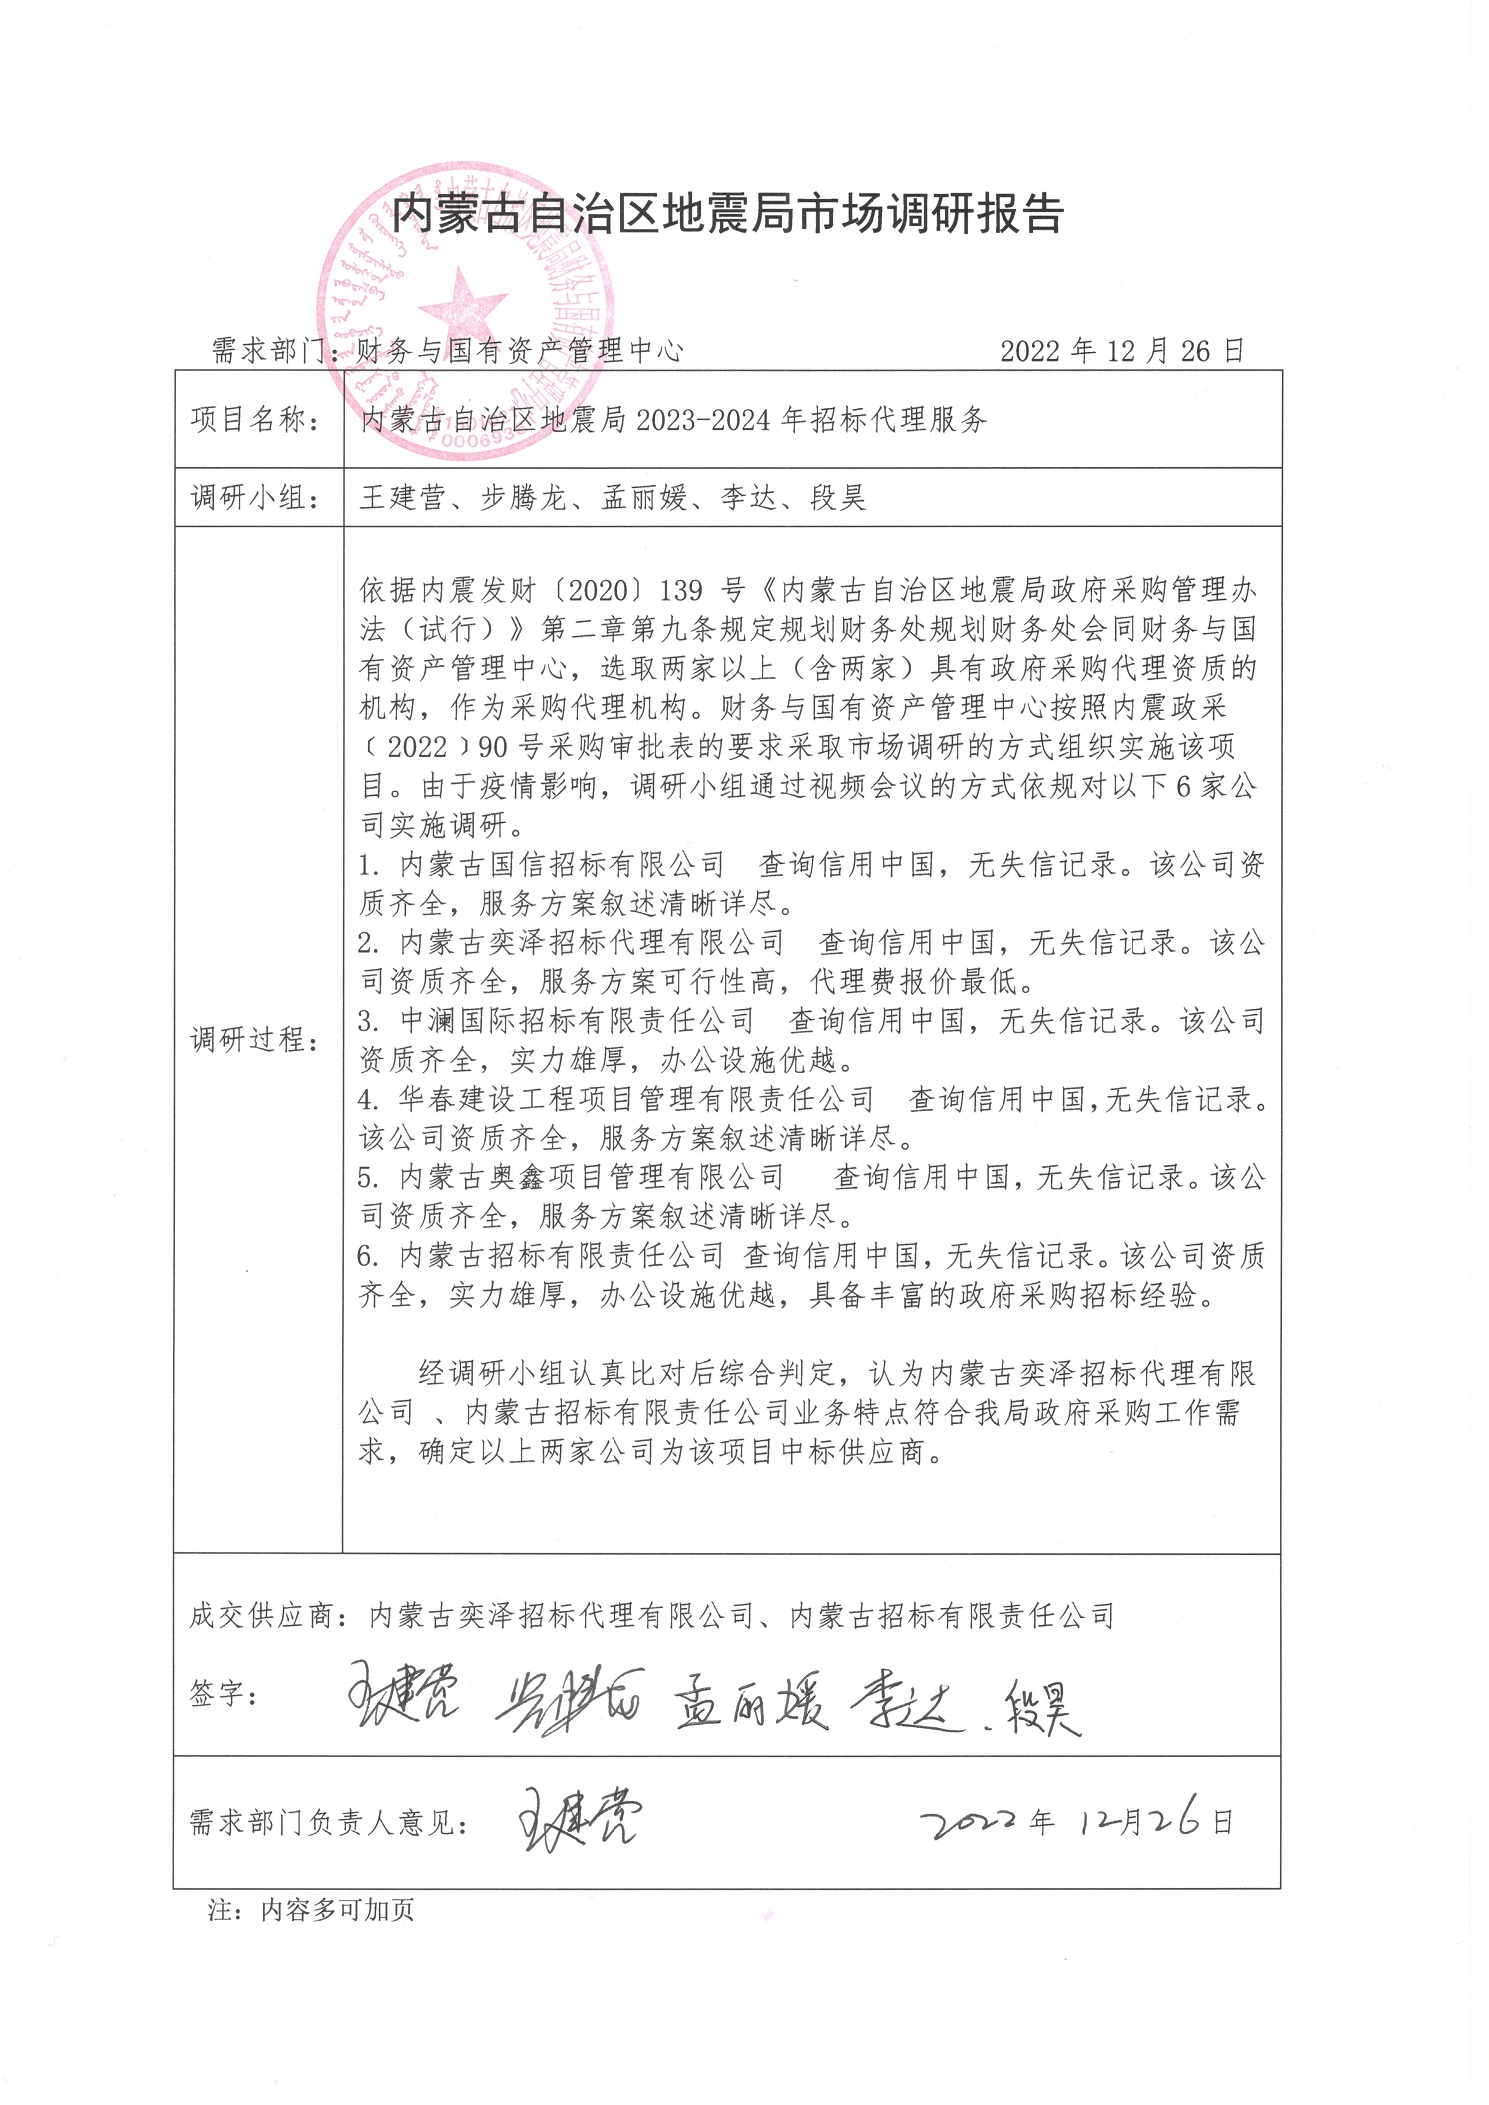 内蒙古自治区地震局2023-2024年招标代理服务.jpg